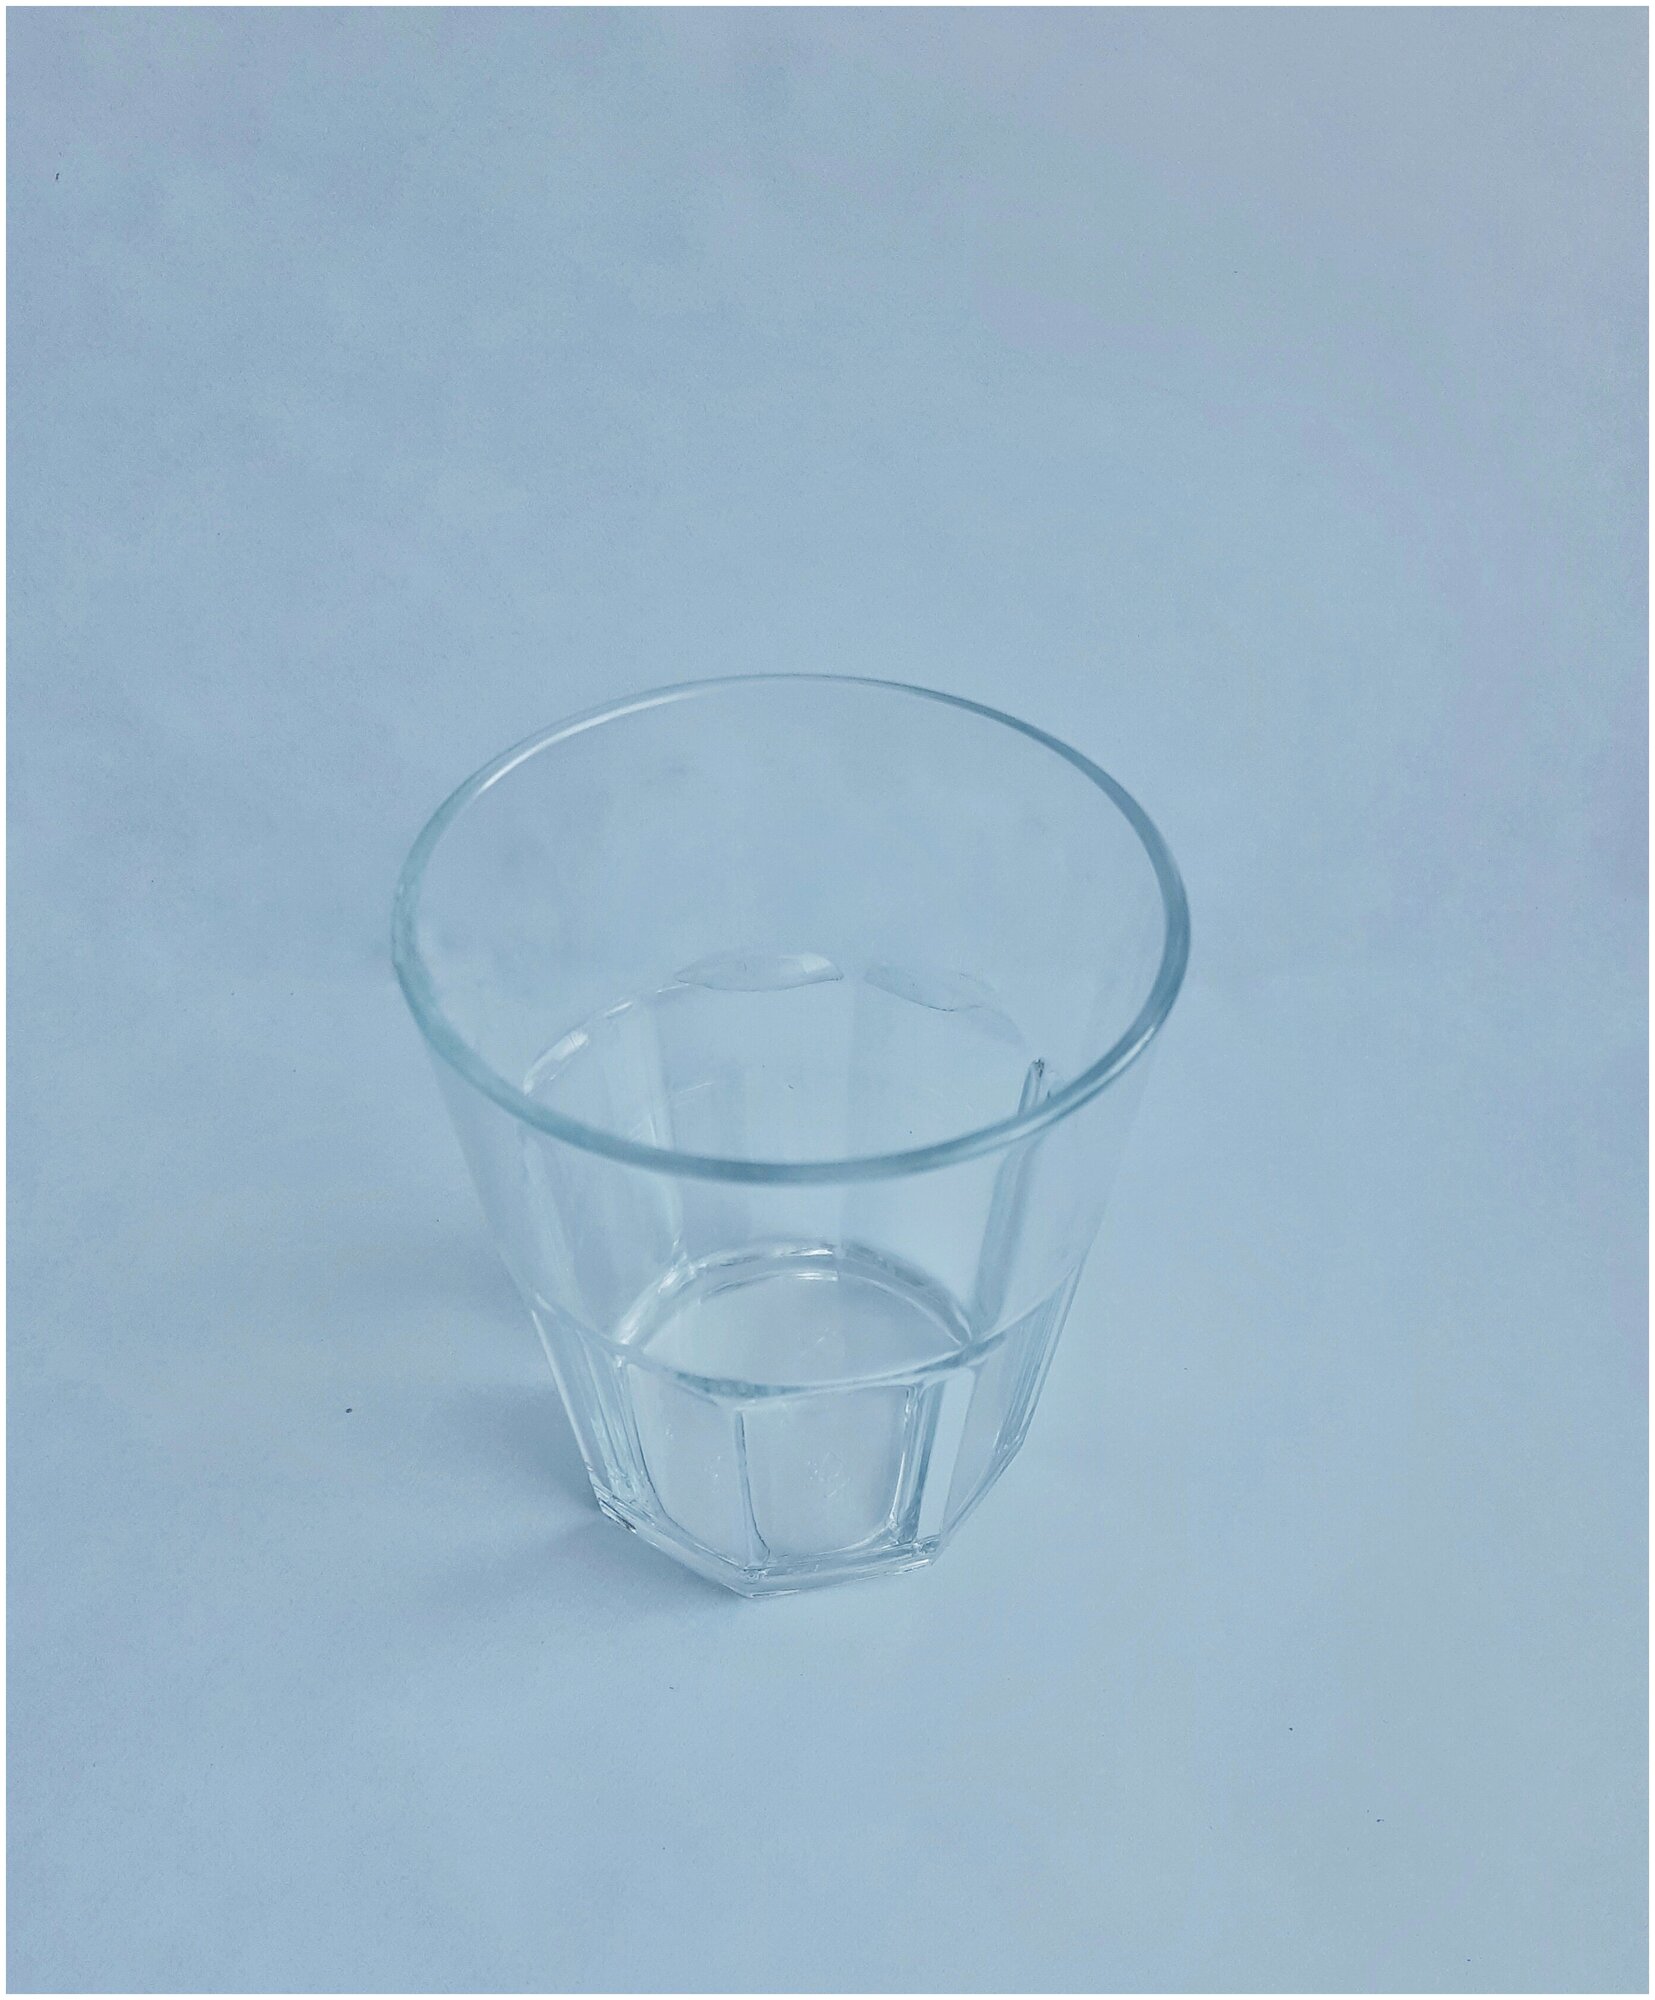 Стакан 200 мл. для многоразового использования из Поликарбоната (плотного пластика) (прозрачный 4 штуки) - фотография № 6